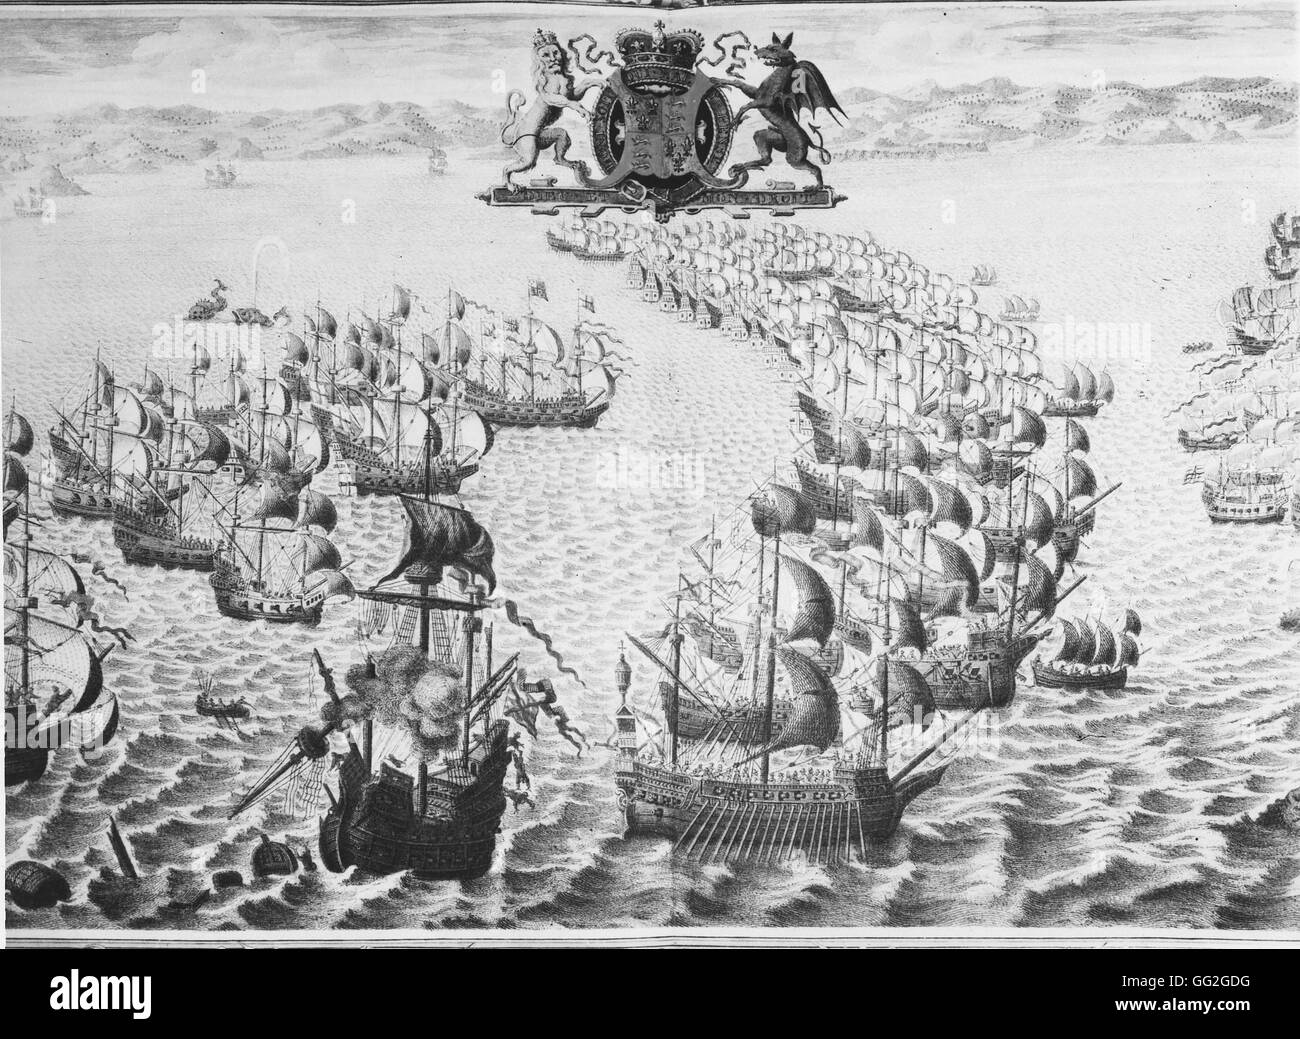 Niederlage der spanischen Armada durch die englische Marine Kräfte im Jahre 1588. Stich nach einem Wandteppich. Stockfoto